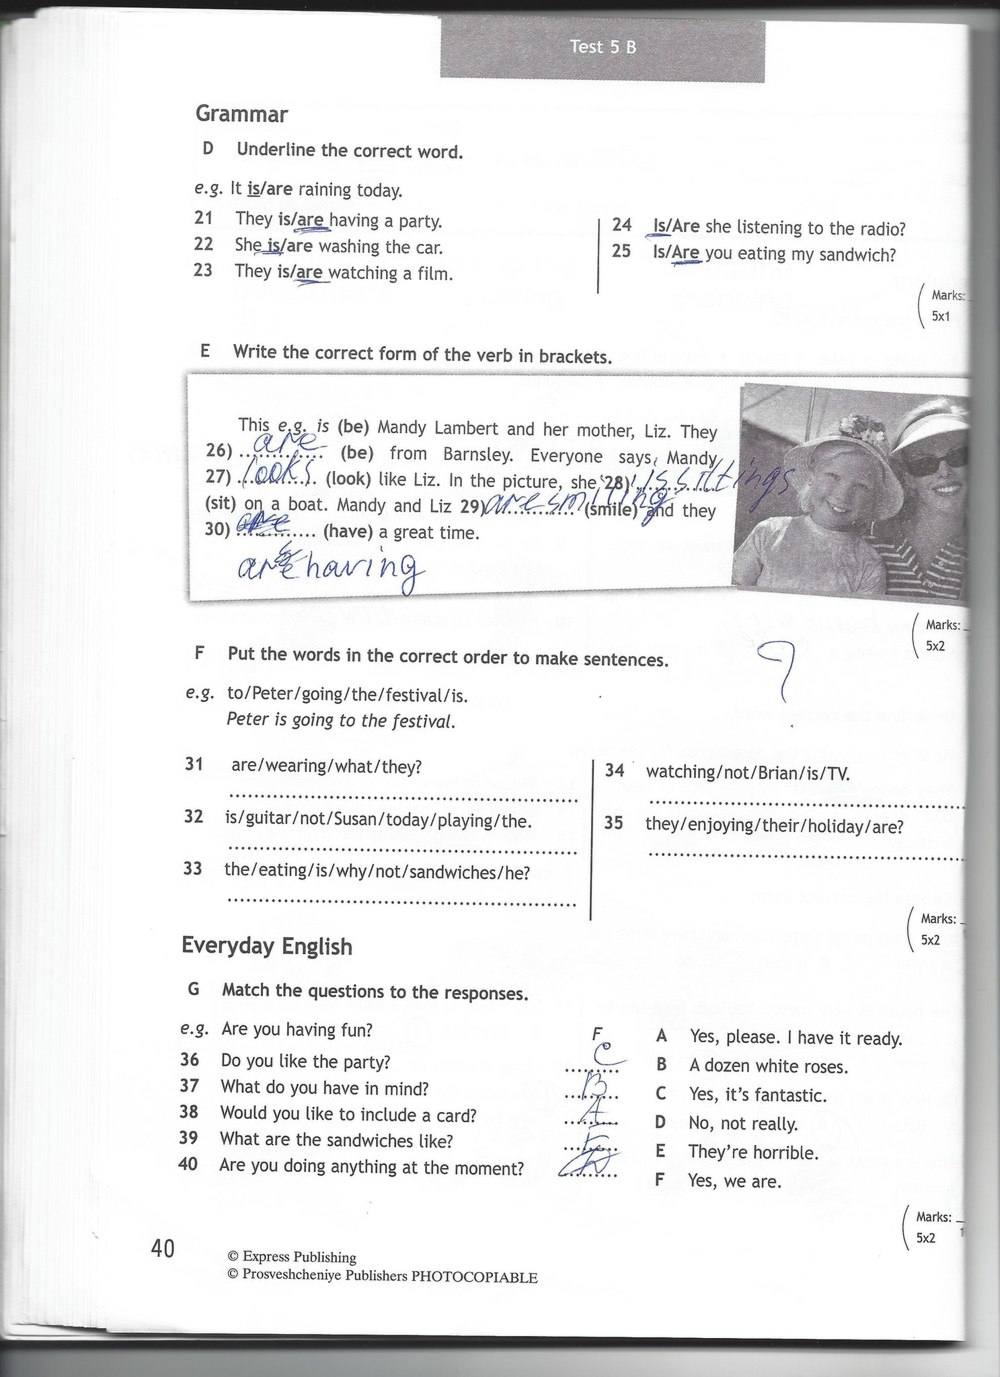 Английский язык тест 6b. Английский язык 5 класс тест буклет Spotlight 6 а. Английский язык 6 класс тест бук Spotlight 5b. 6 Класс английский язык Spotlight 6 модуль. Английский 6 класс ваулина кр 6 модуль.